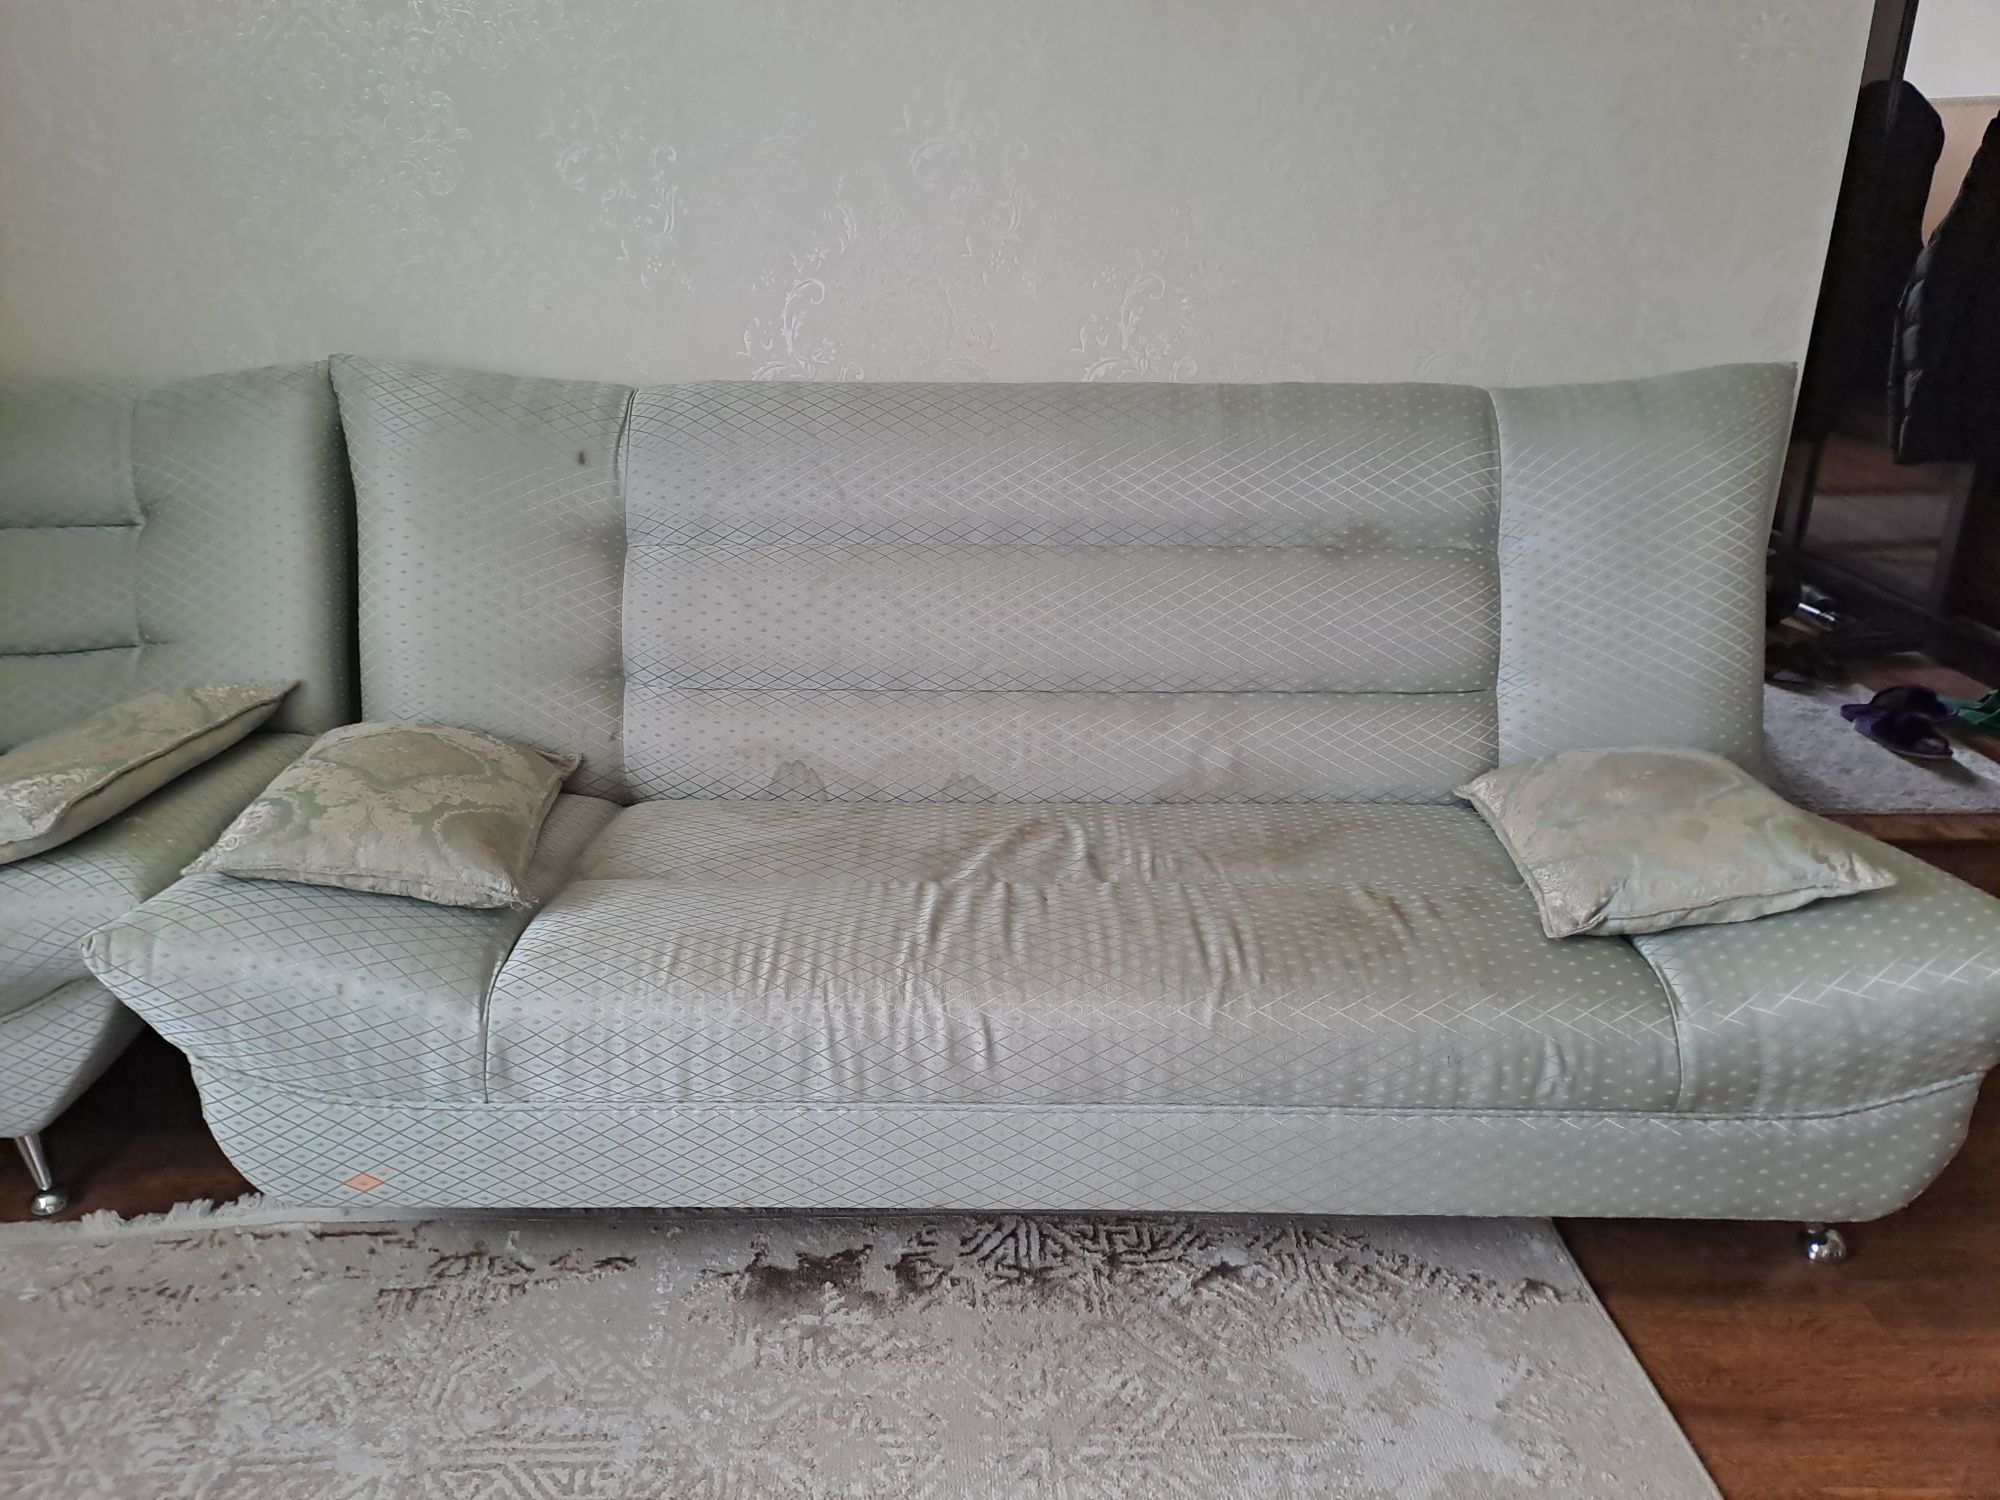 Продаётся диван вместе с креслами